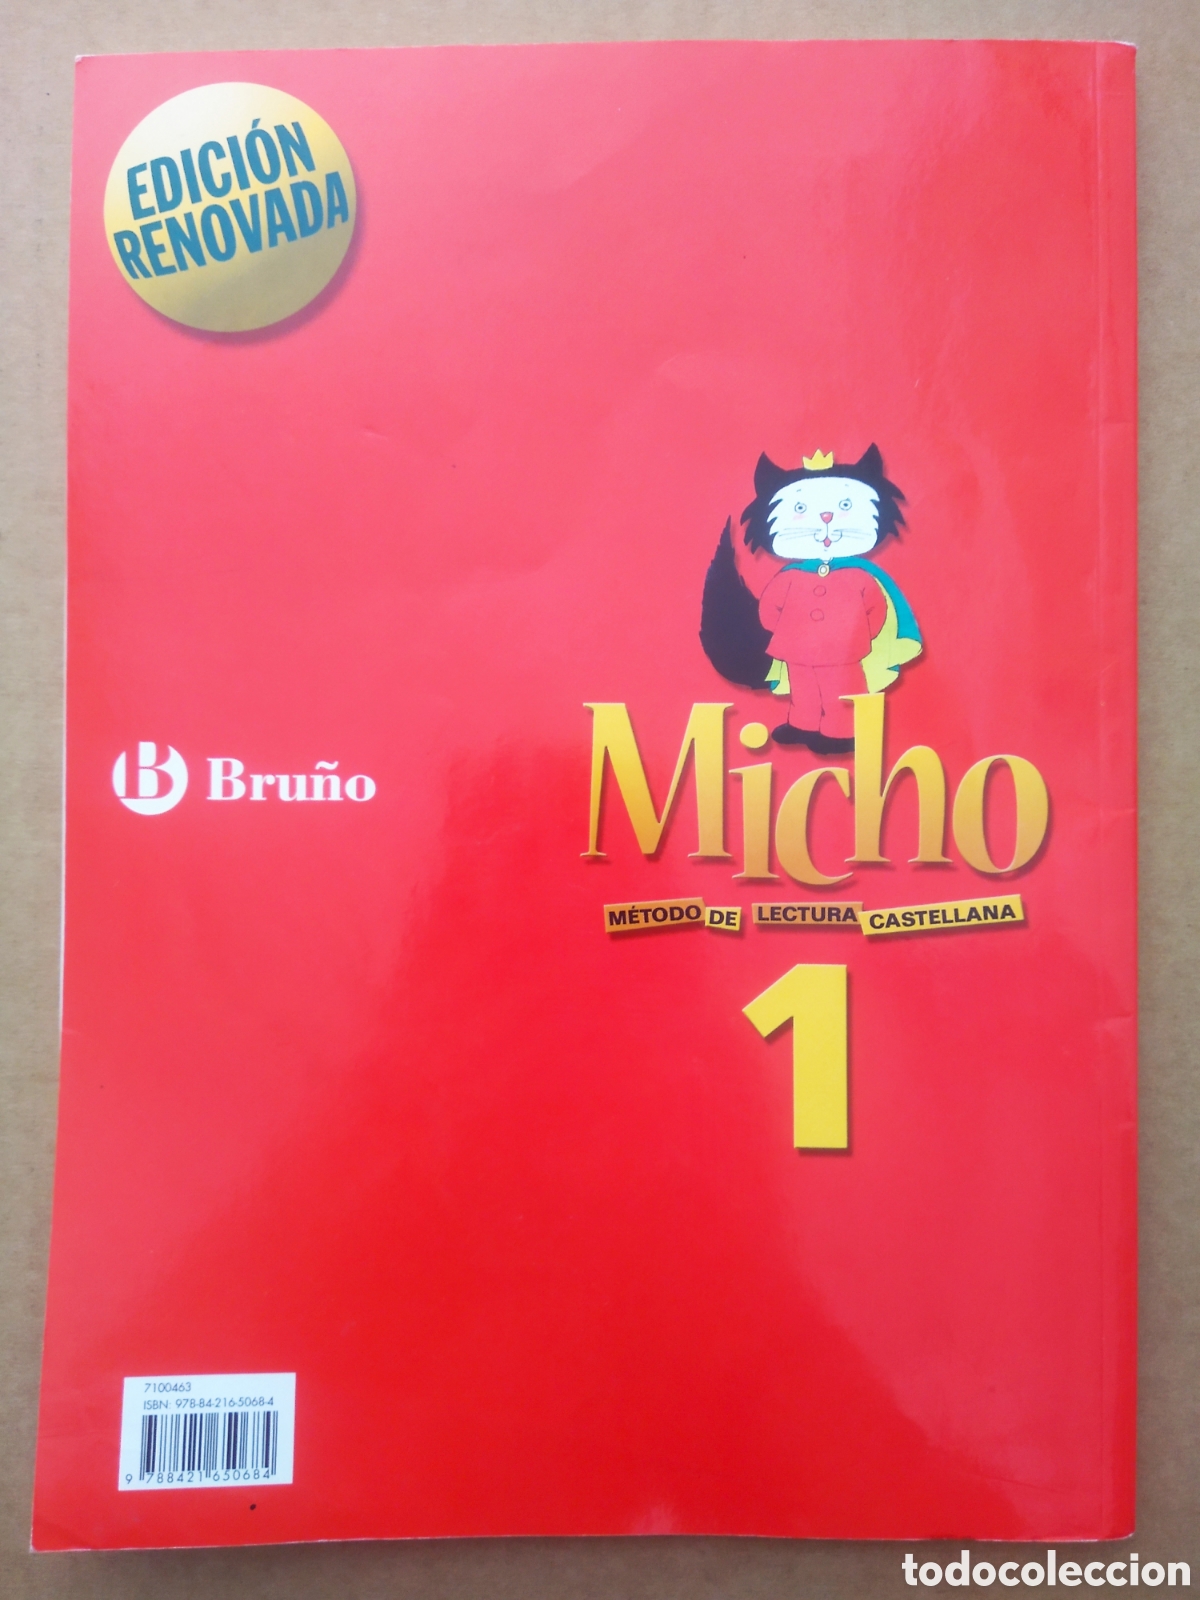 MICHO 1 - METODO DE LECTURA